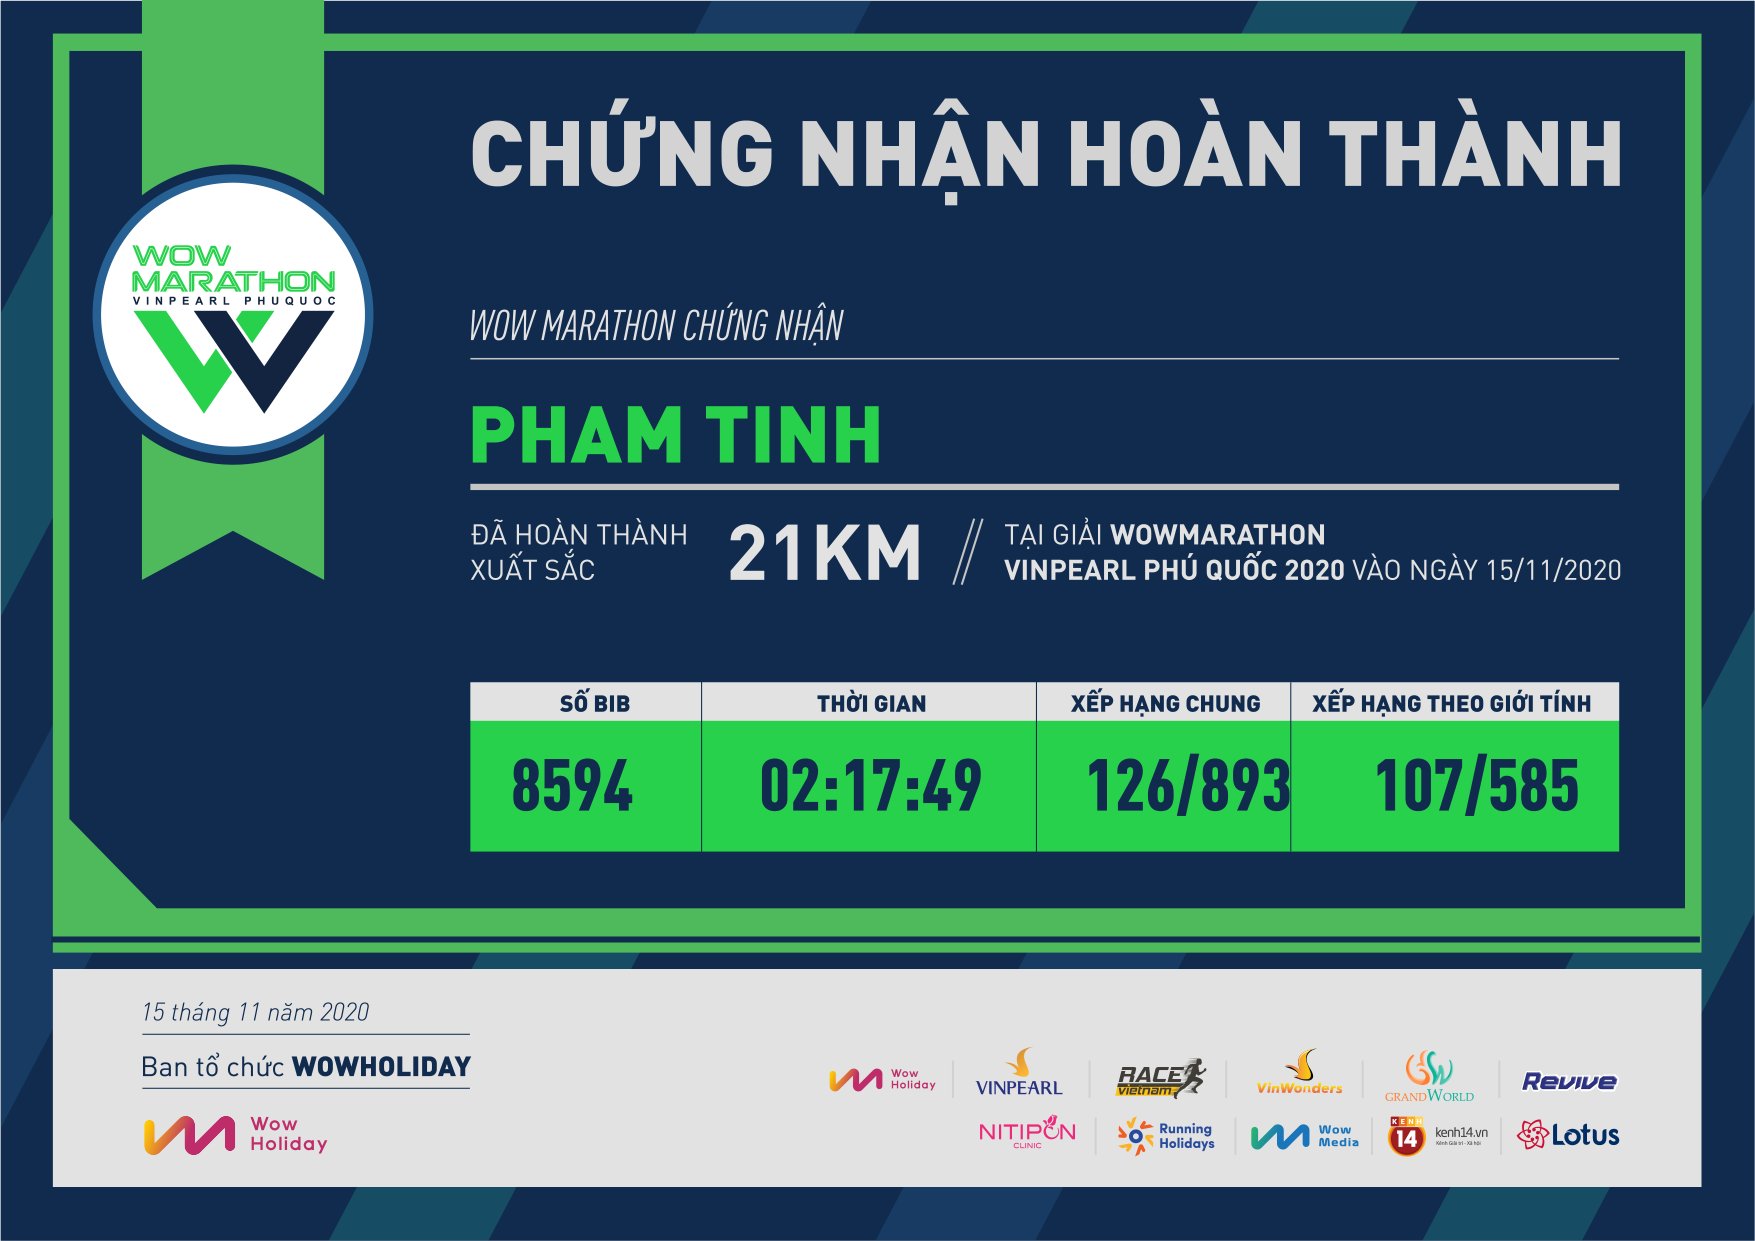 8594 - Pham Tinh